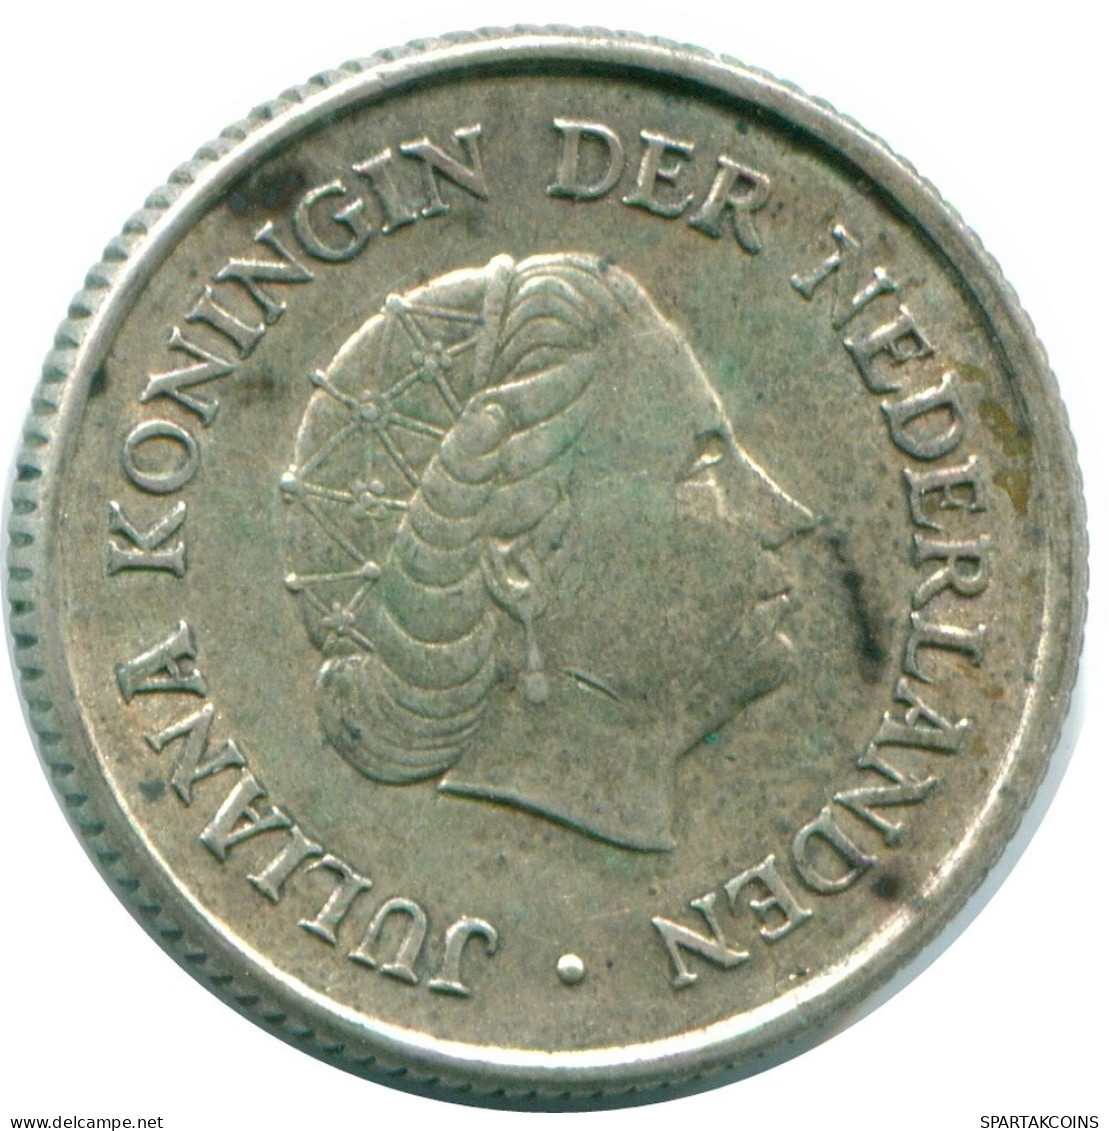 1/4 GULDEN 1963 NIEDERLÄNDISCHE ANTILLEN SILBER Koloniale Münze #NL11217.4.D.A - Niederländische Antillen